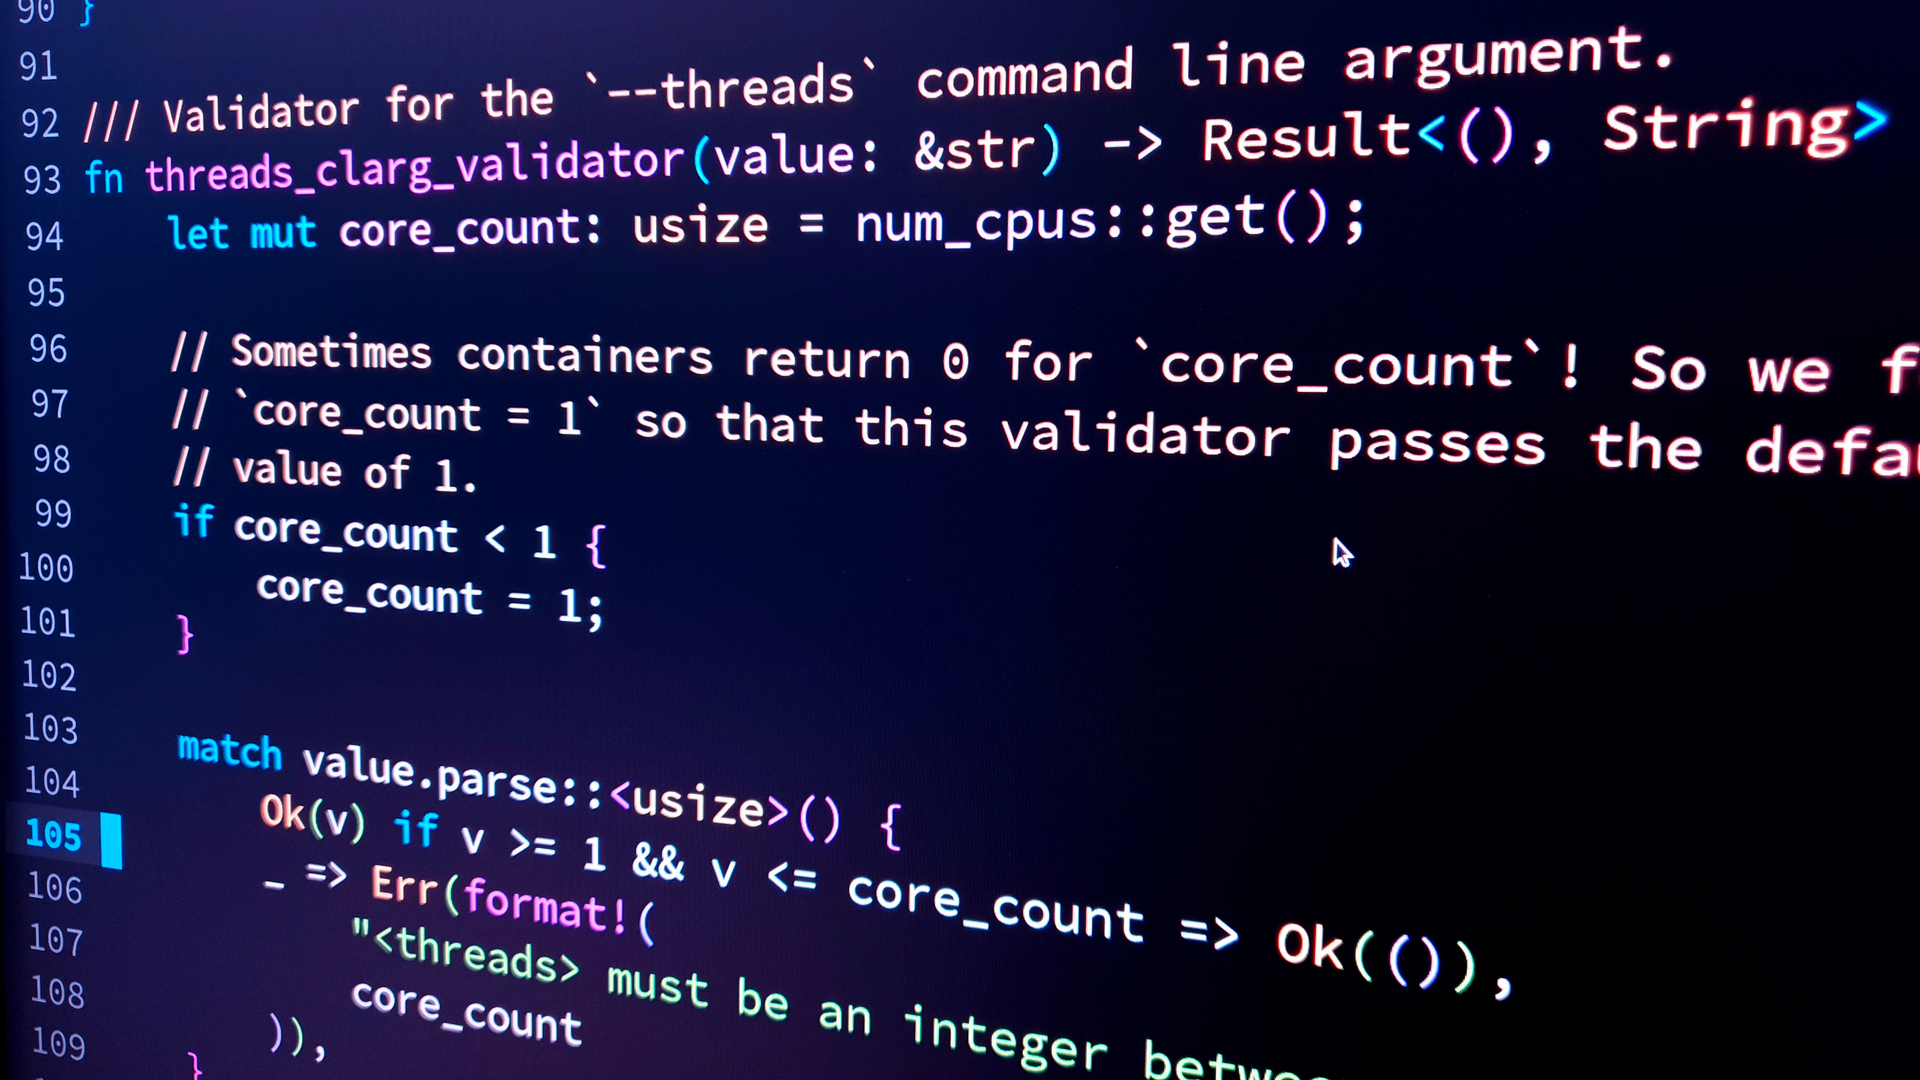 Computer code